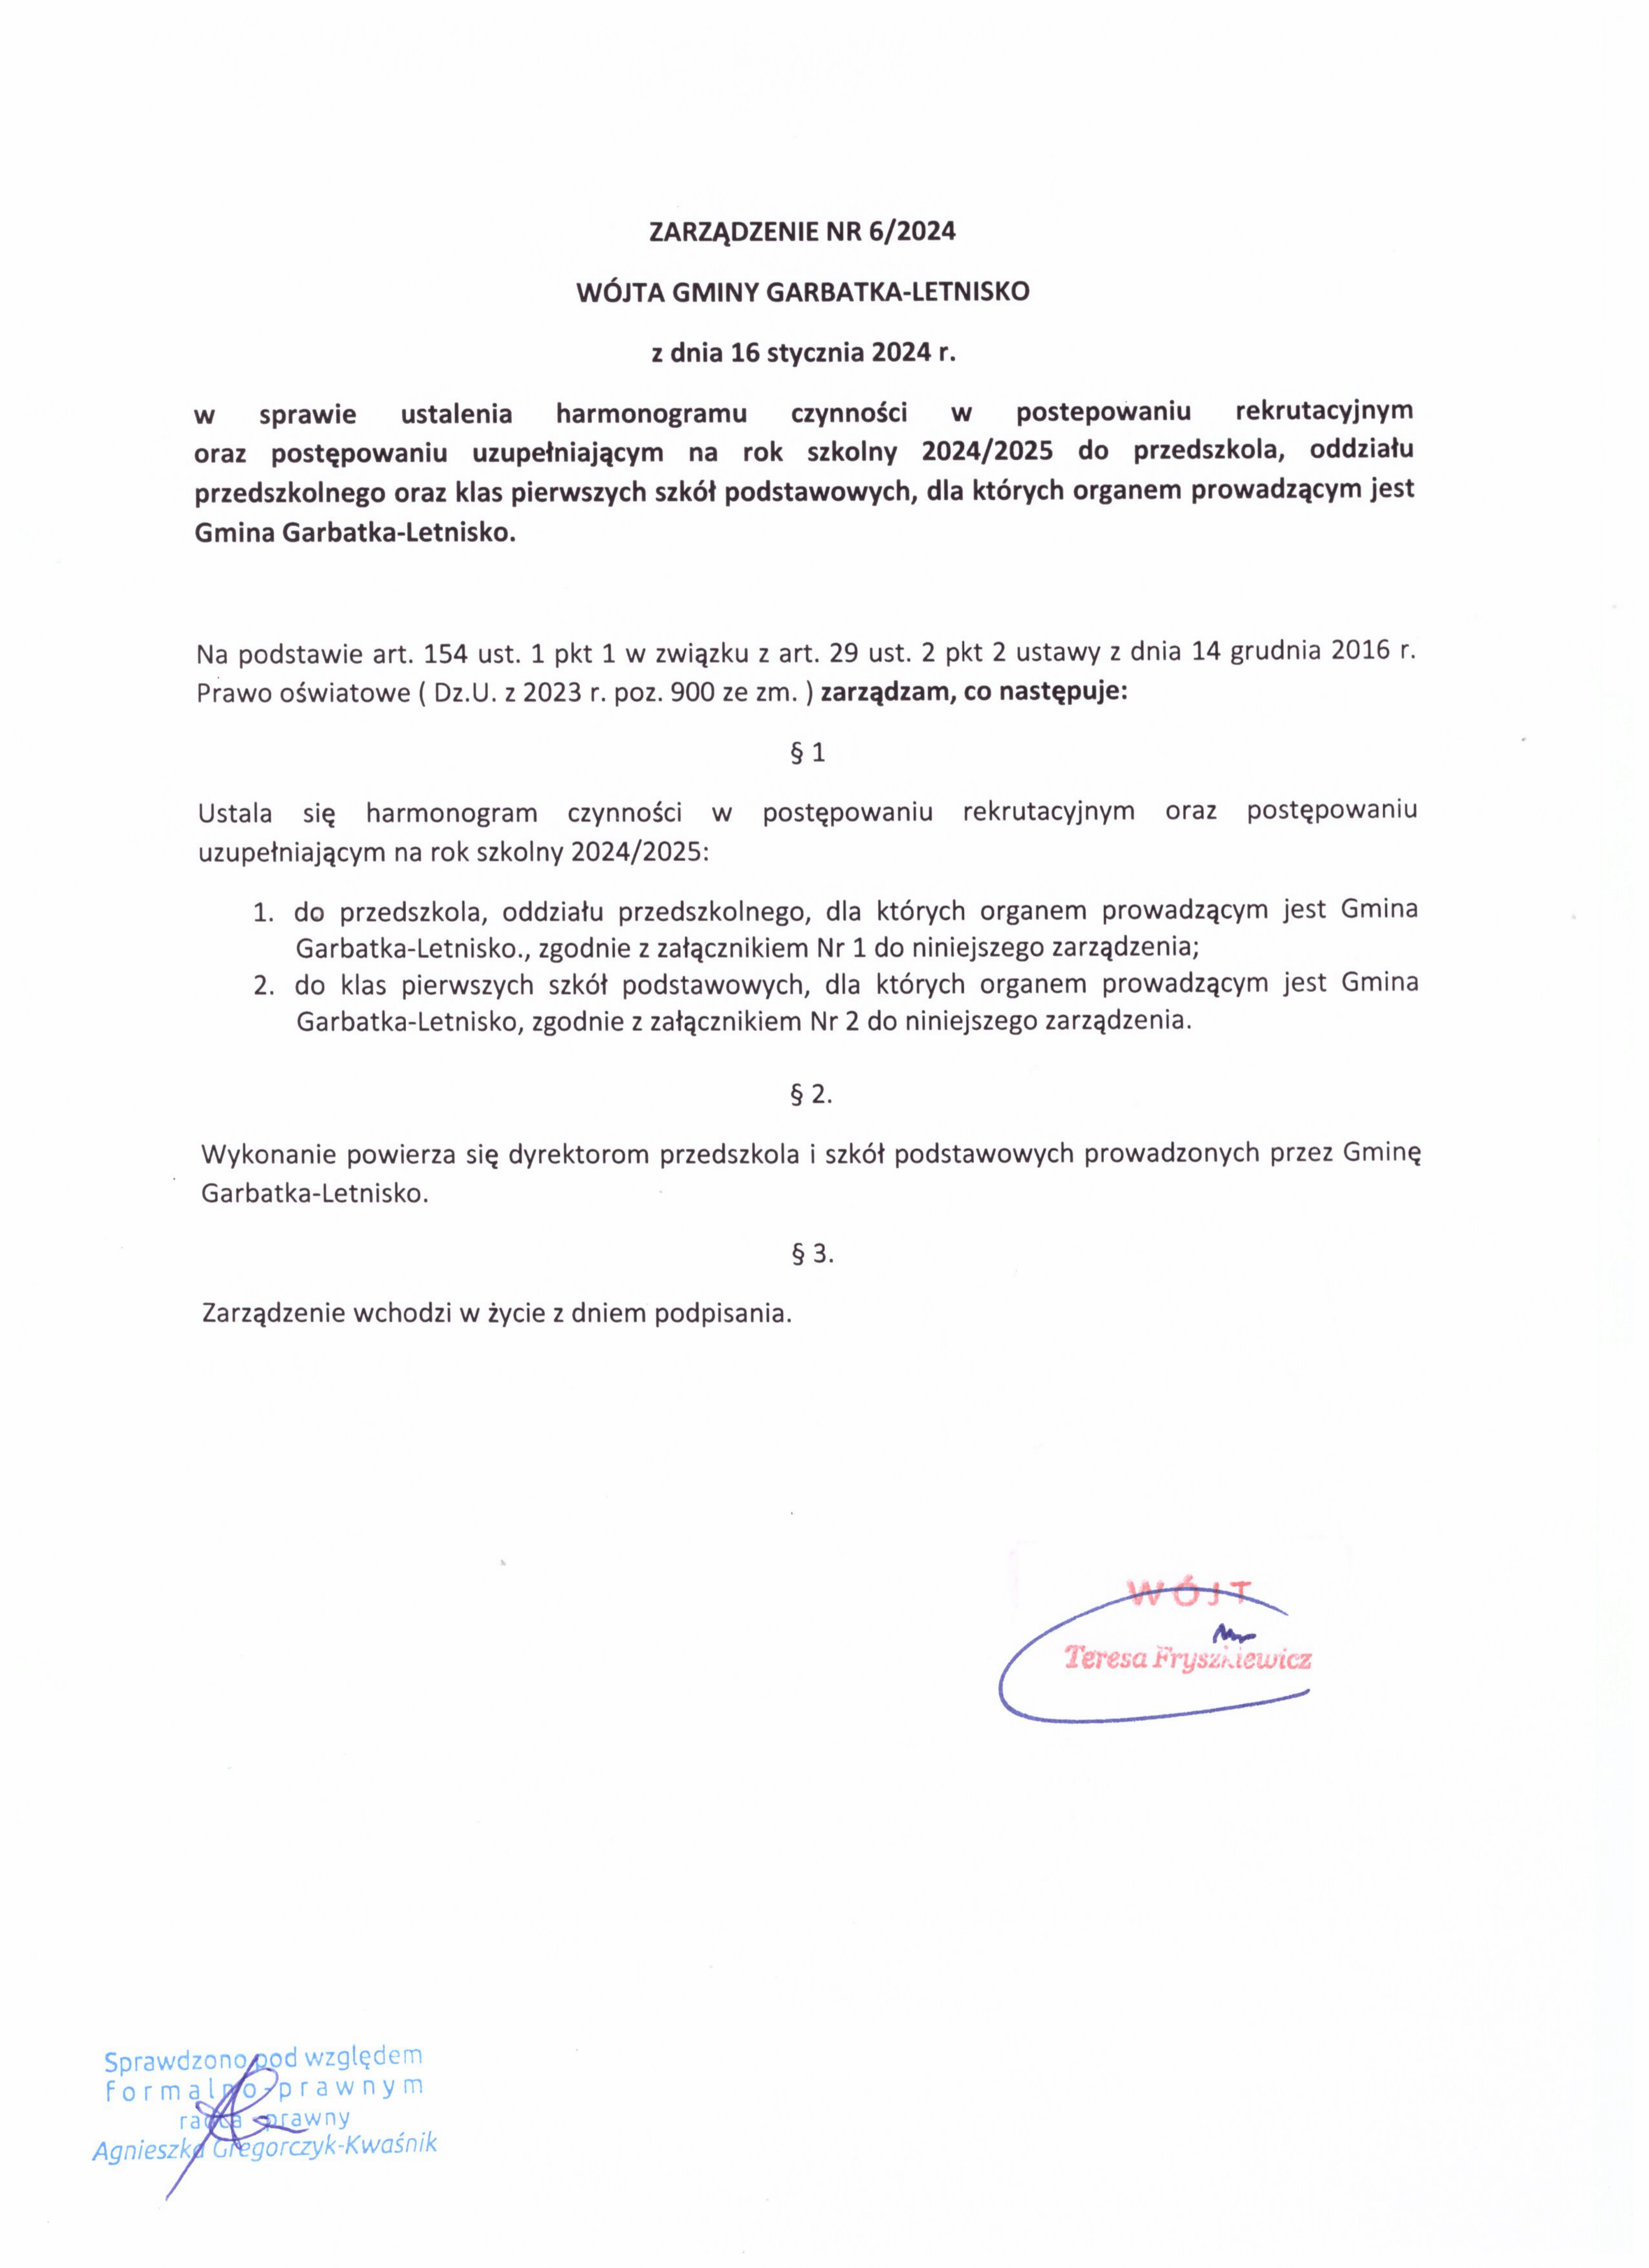 Harmonogram czynności w postępowaniu rekrutacyjnym oraz uzupełniającym na rok szkolny 2024/25